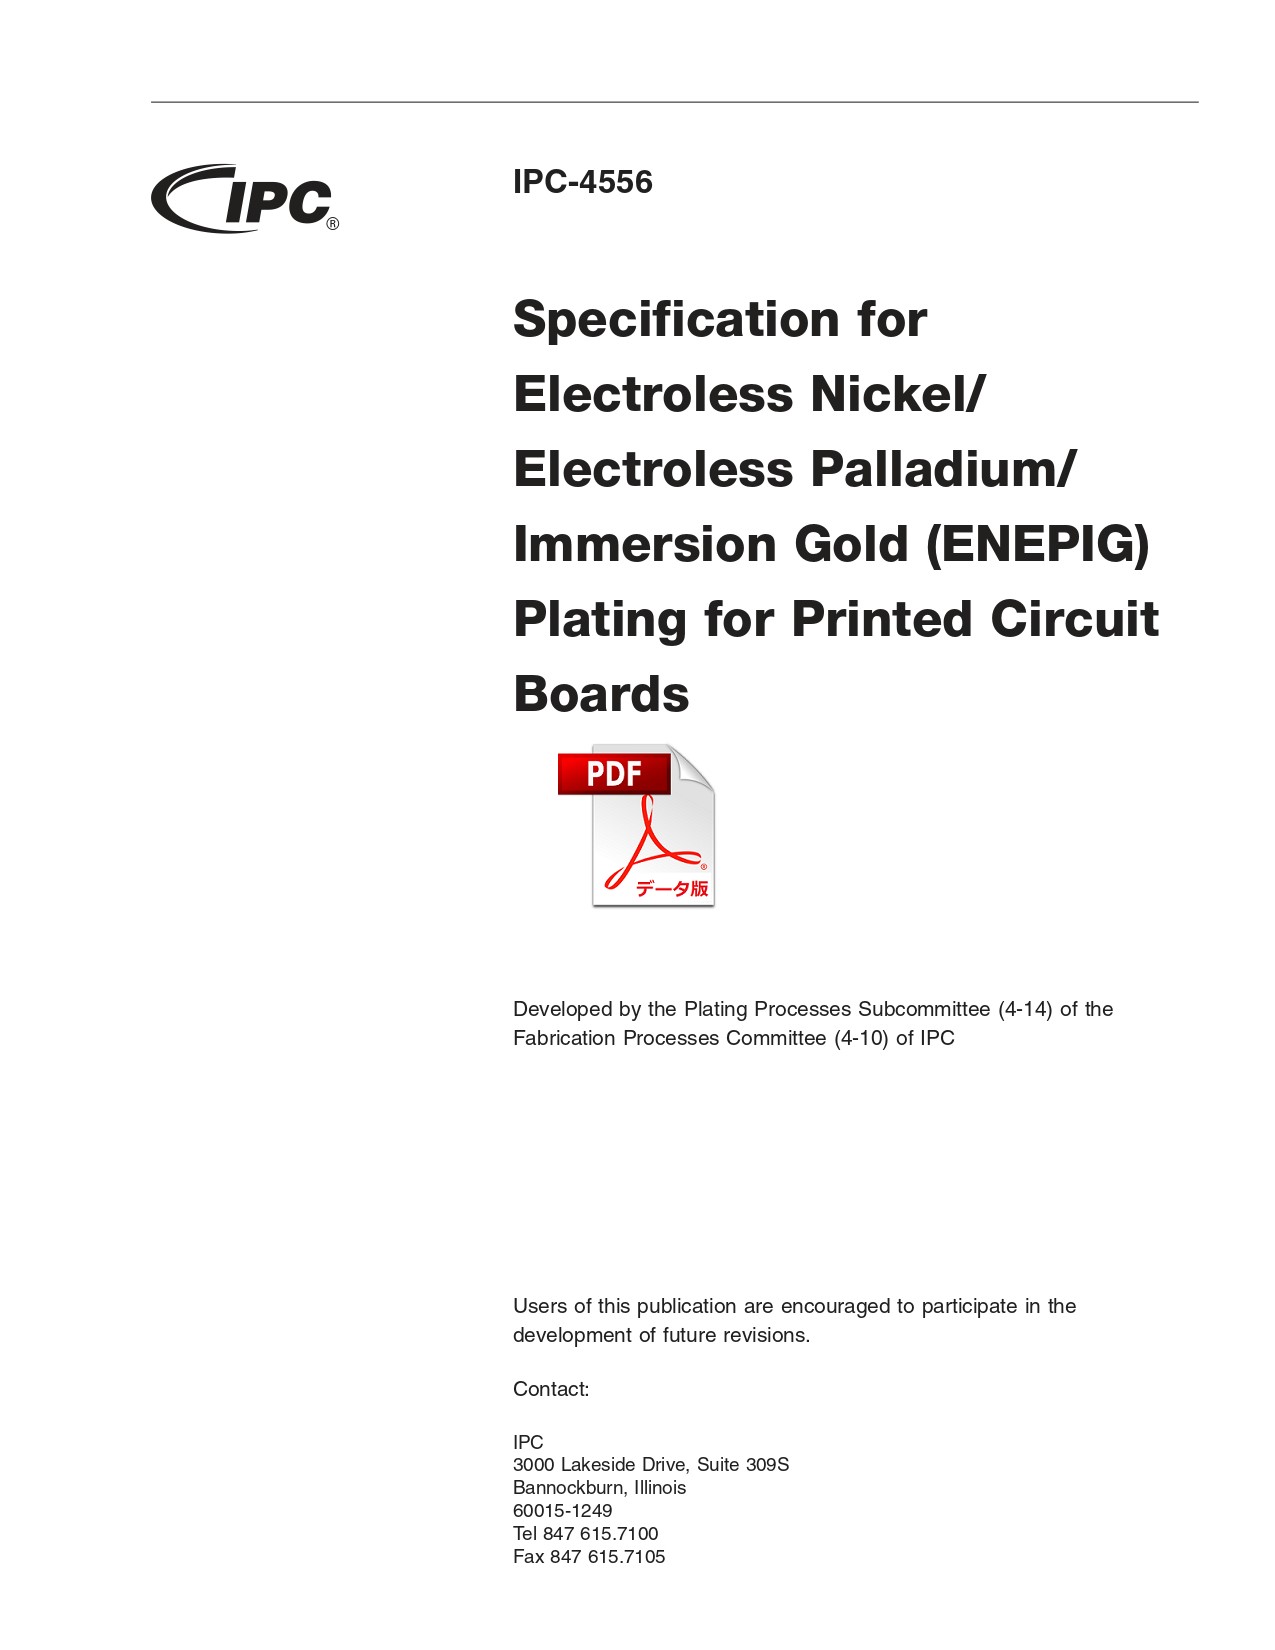 【英語版】IPC-4556: Specification for Electroless Nickel/Electroless Palladium/Immersion Gold (ENEPIG) Plating for Printed Circuit Boards